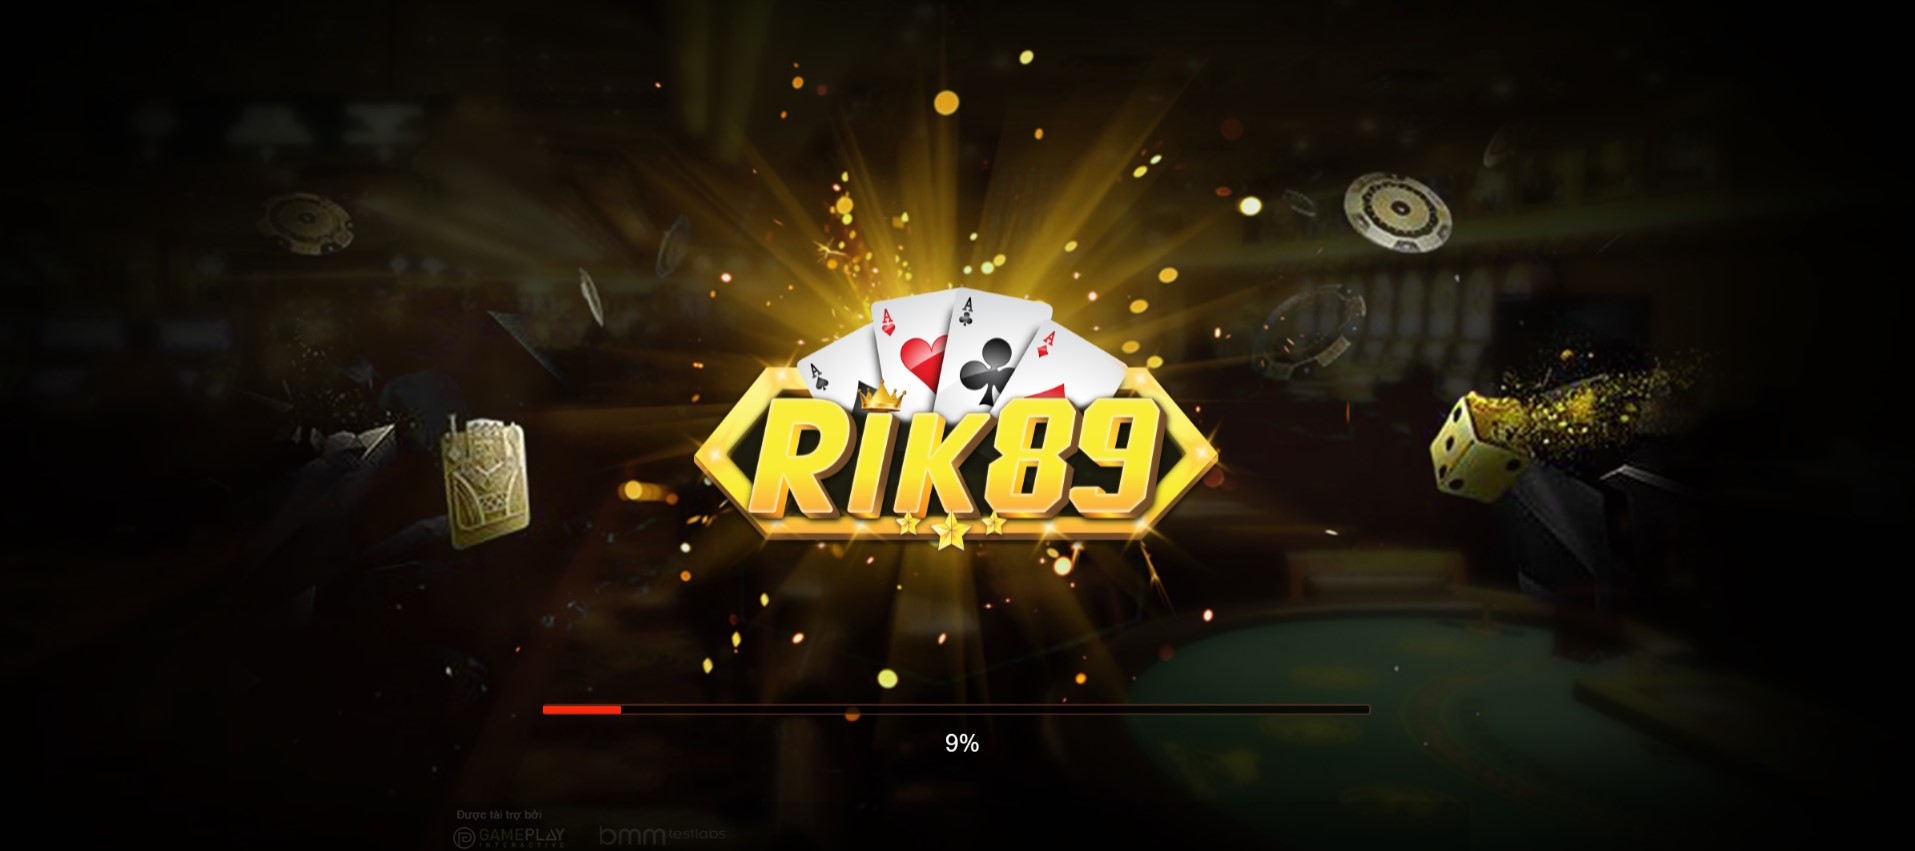 Giới thiệu Rik89 club